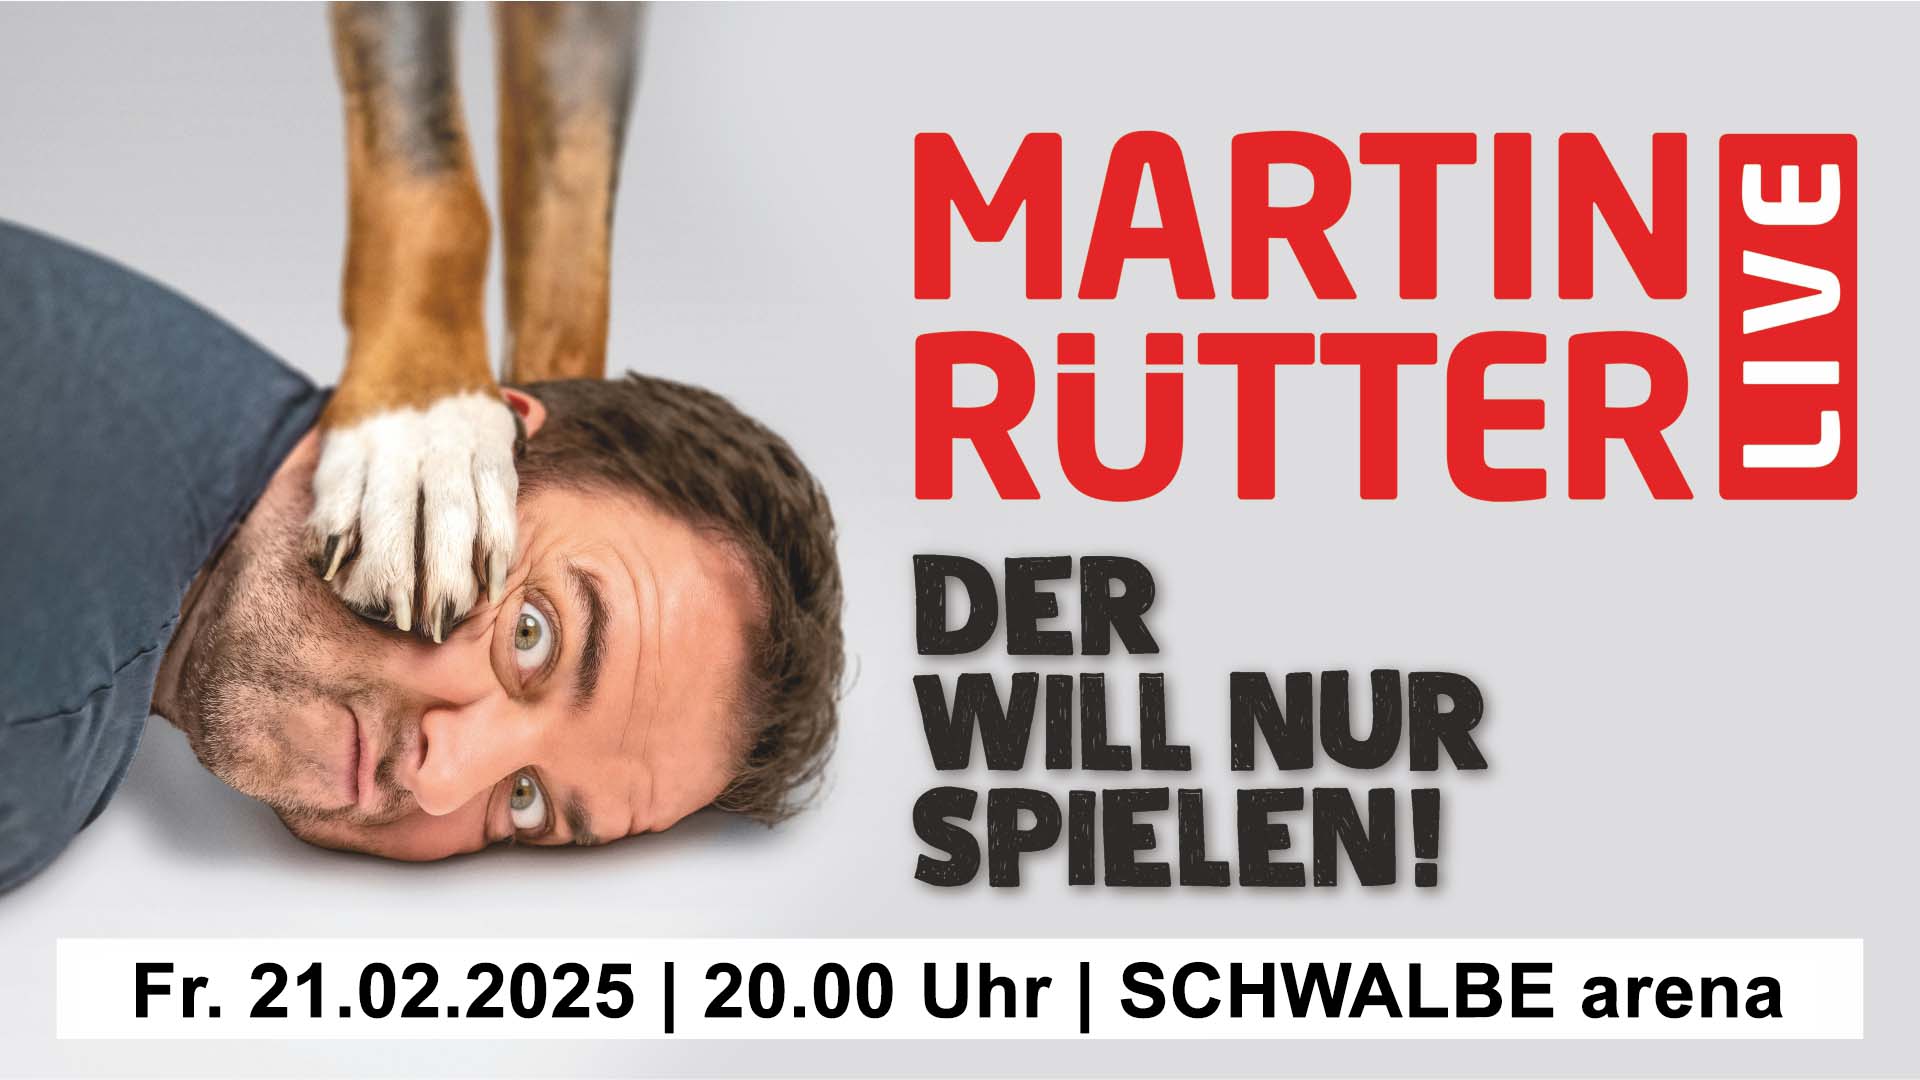 SCHWALBE arena | MARTIN RÜTTER - Der will nur spielen! - ZUSATZTERMIN